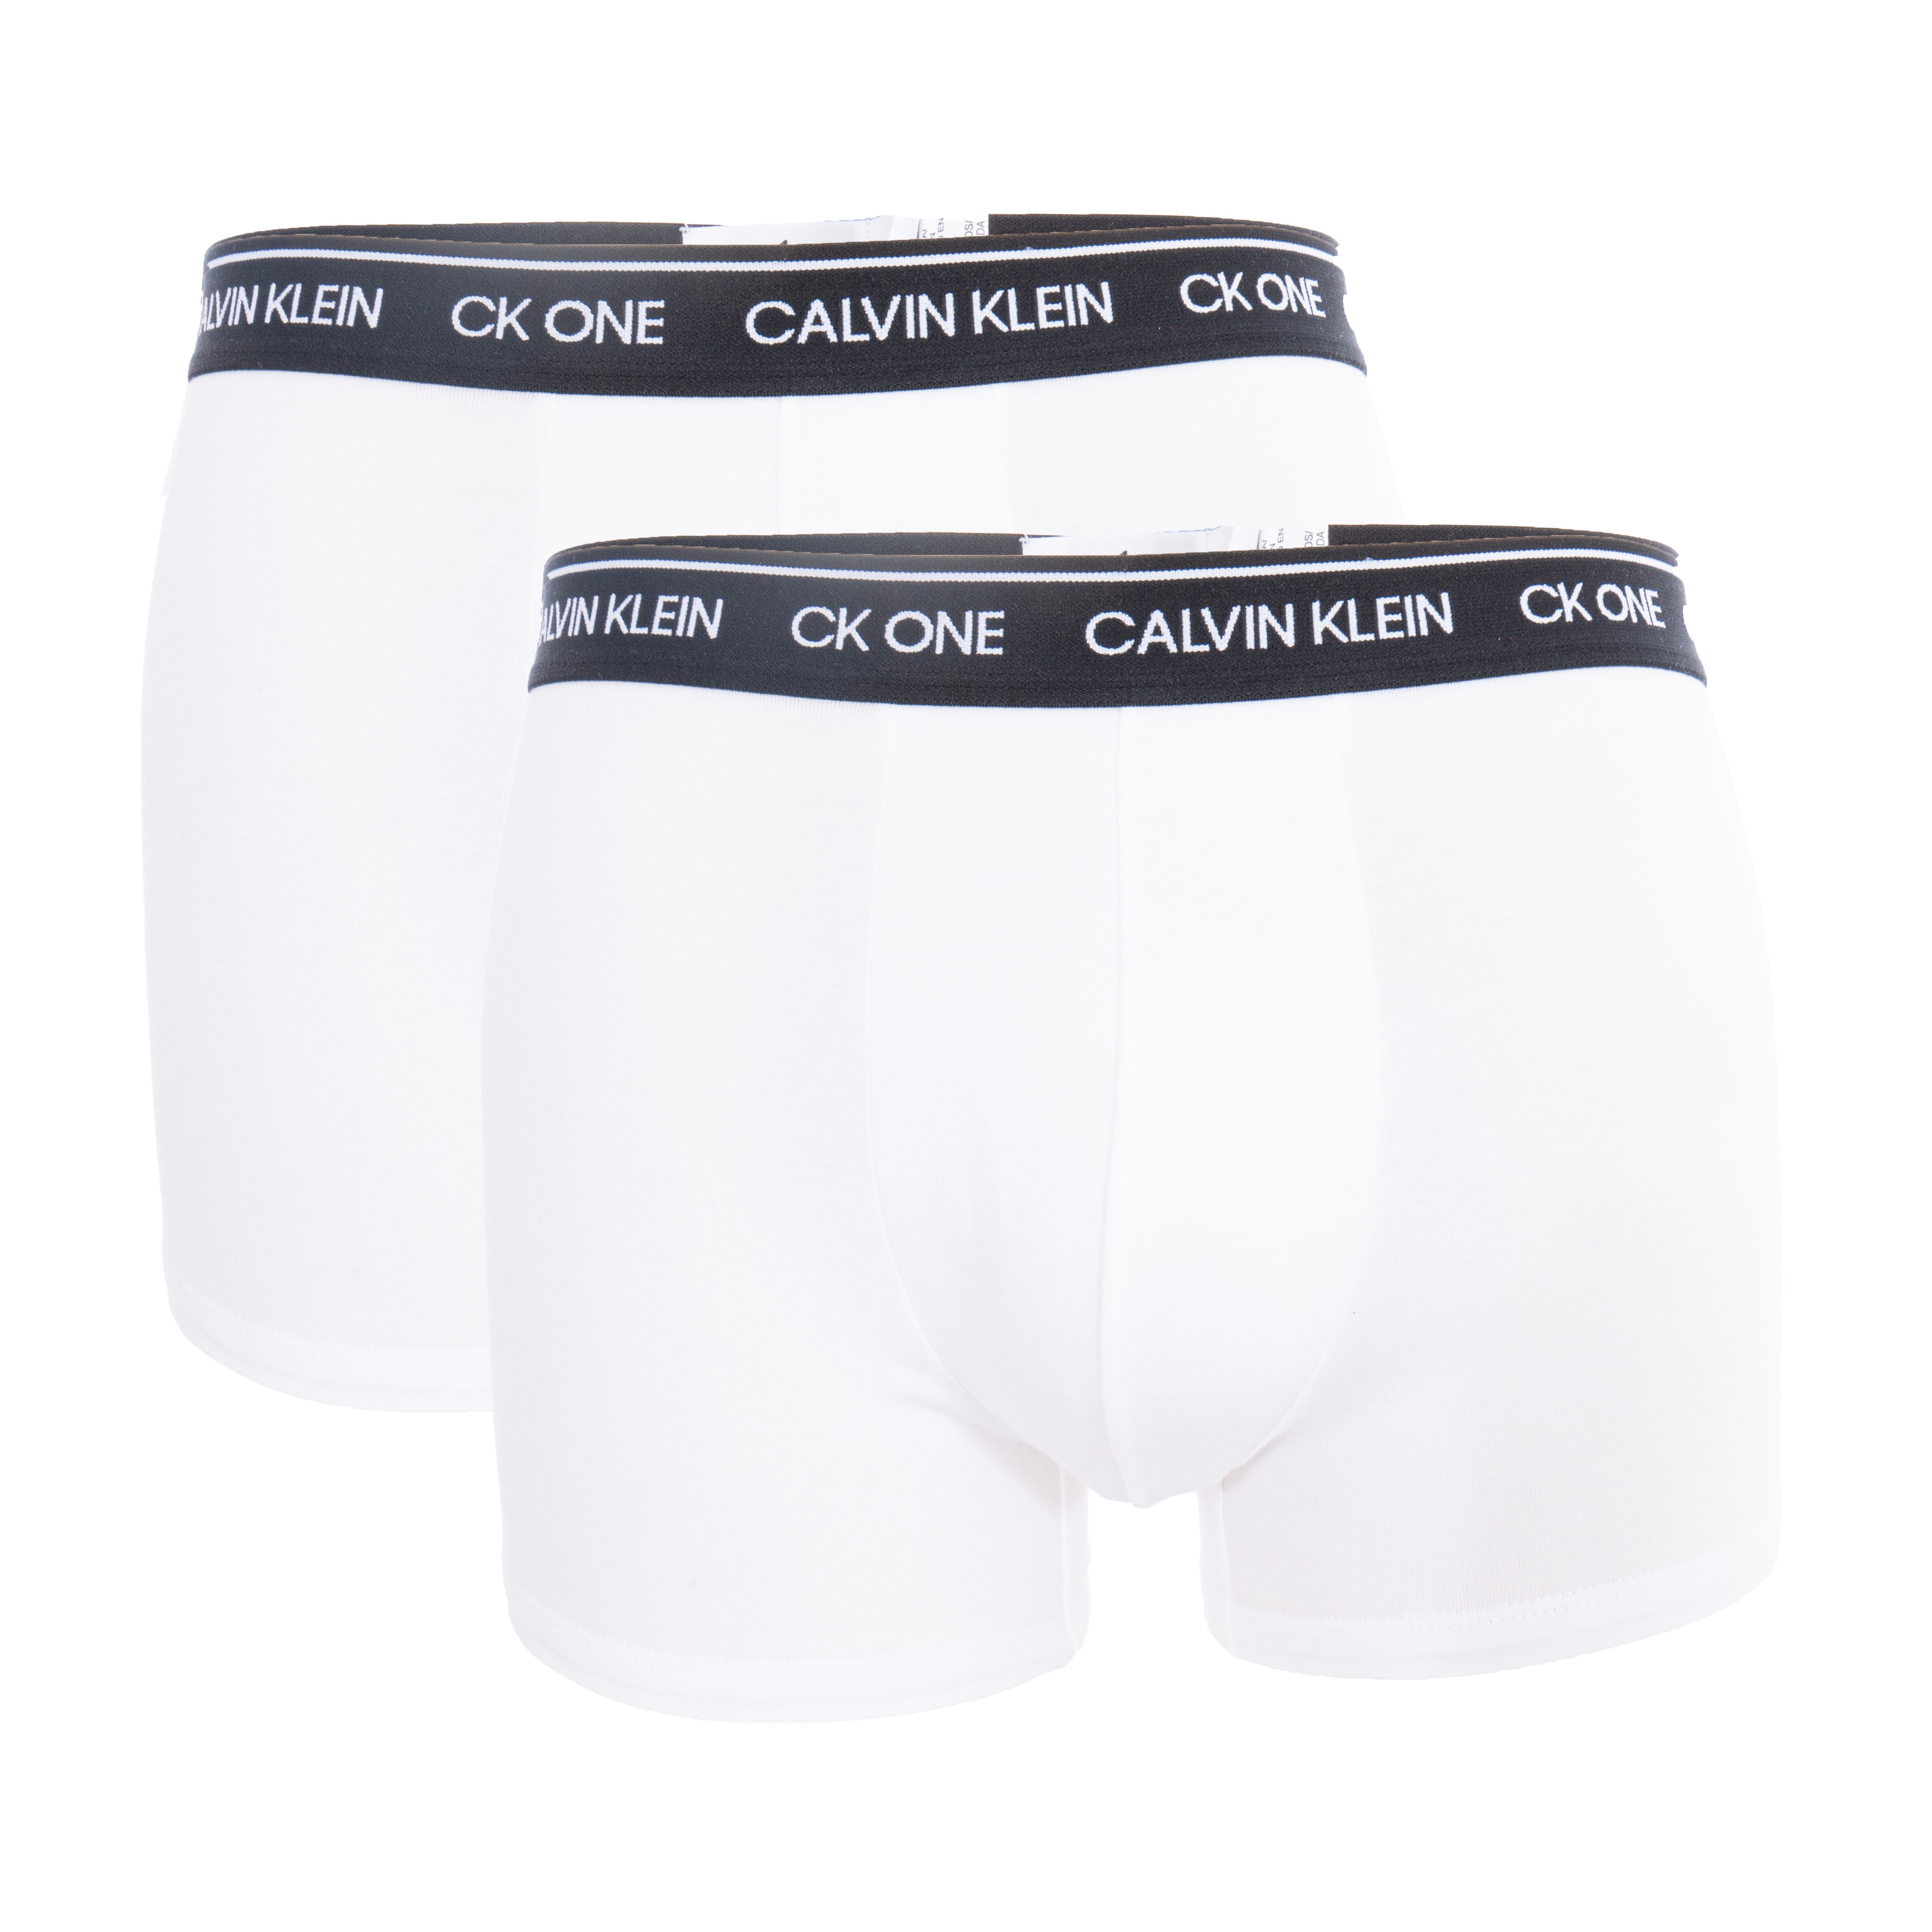 Terug, terug, terug deel schrijven Transplanteren Lot of 2 boxers Calvin Klein - CK one white: Packs for man brand Ca...